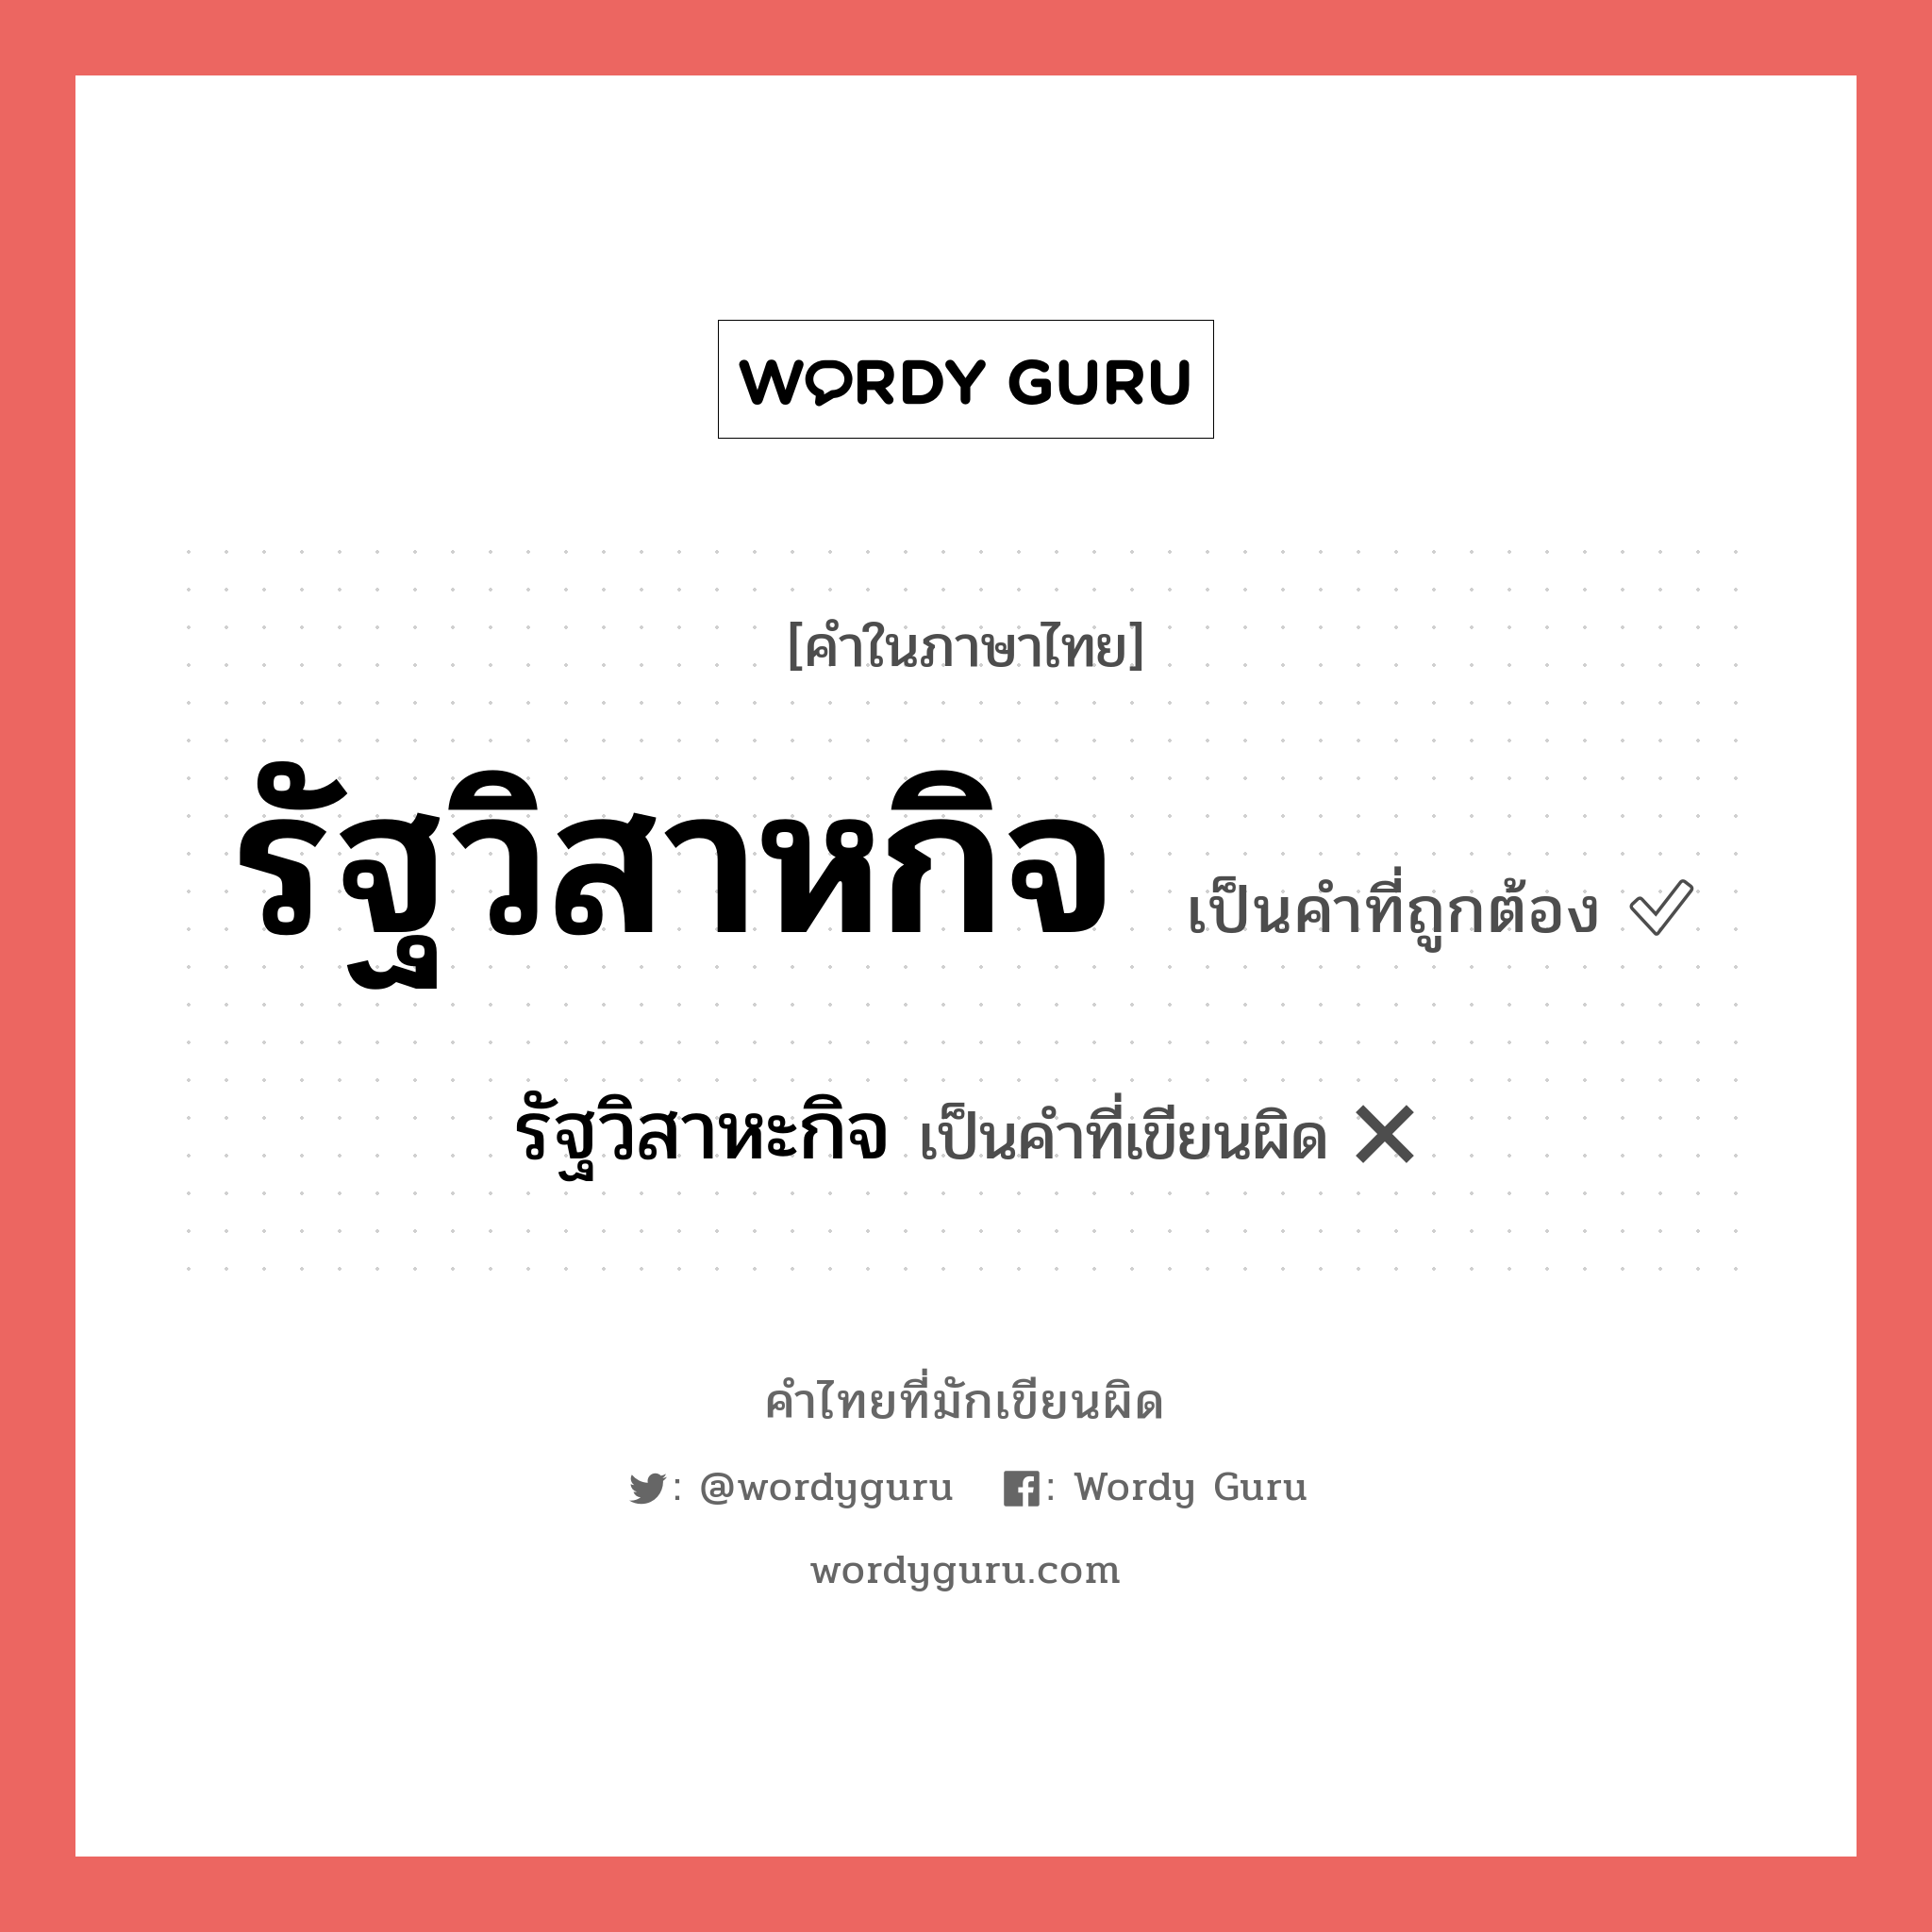 รัฐวิสาหกิจ หรือ รัฐวิสาหะกิจ คำไหนเขียนถูก?, คำในภาษาไทยที่มักเขียนผิด รัฐวิสาหกิจ คำที่ผิด ❌ รัฐวิสาหะกิจ